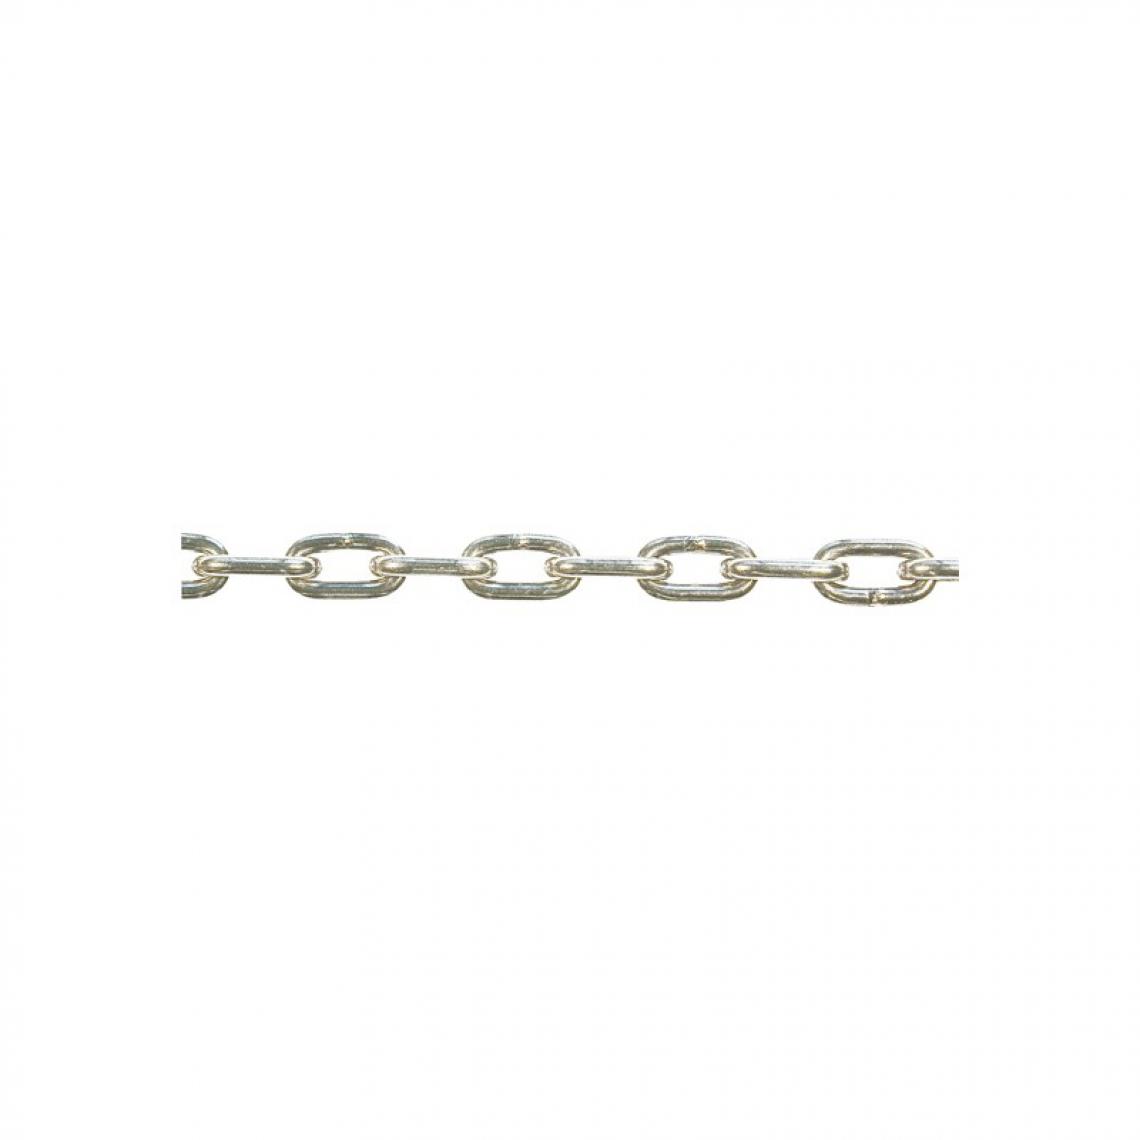 marque generique - Chaine DIN766-A 3x12 inoxydable 30 m (Par 30) - Corde et sangle